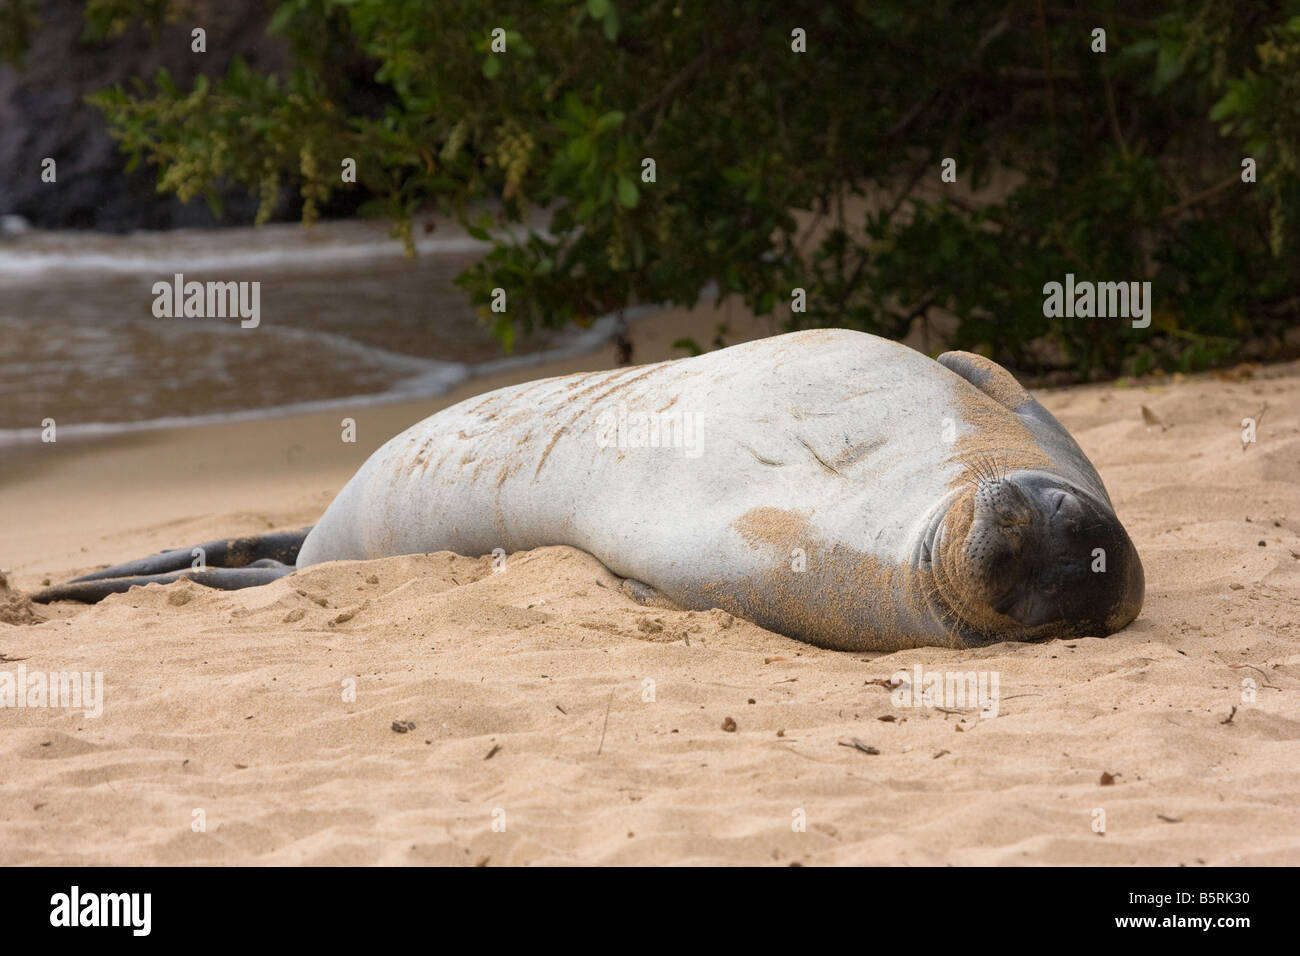 La foca monje hawaiana, Monachus schauinslandi, endémicas y amenazadas, descansa en la arena en la bahía de Kapalua, Maui, Hawaii. Foto de stock